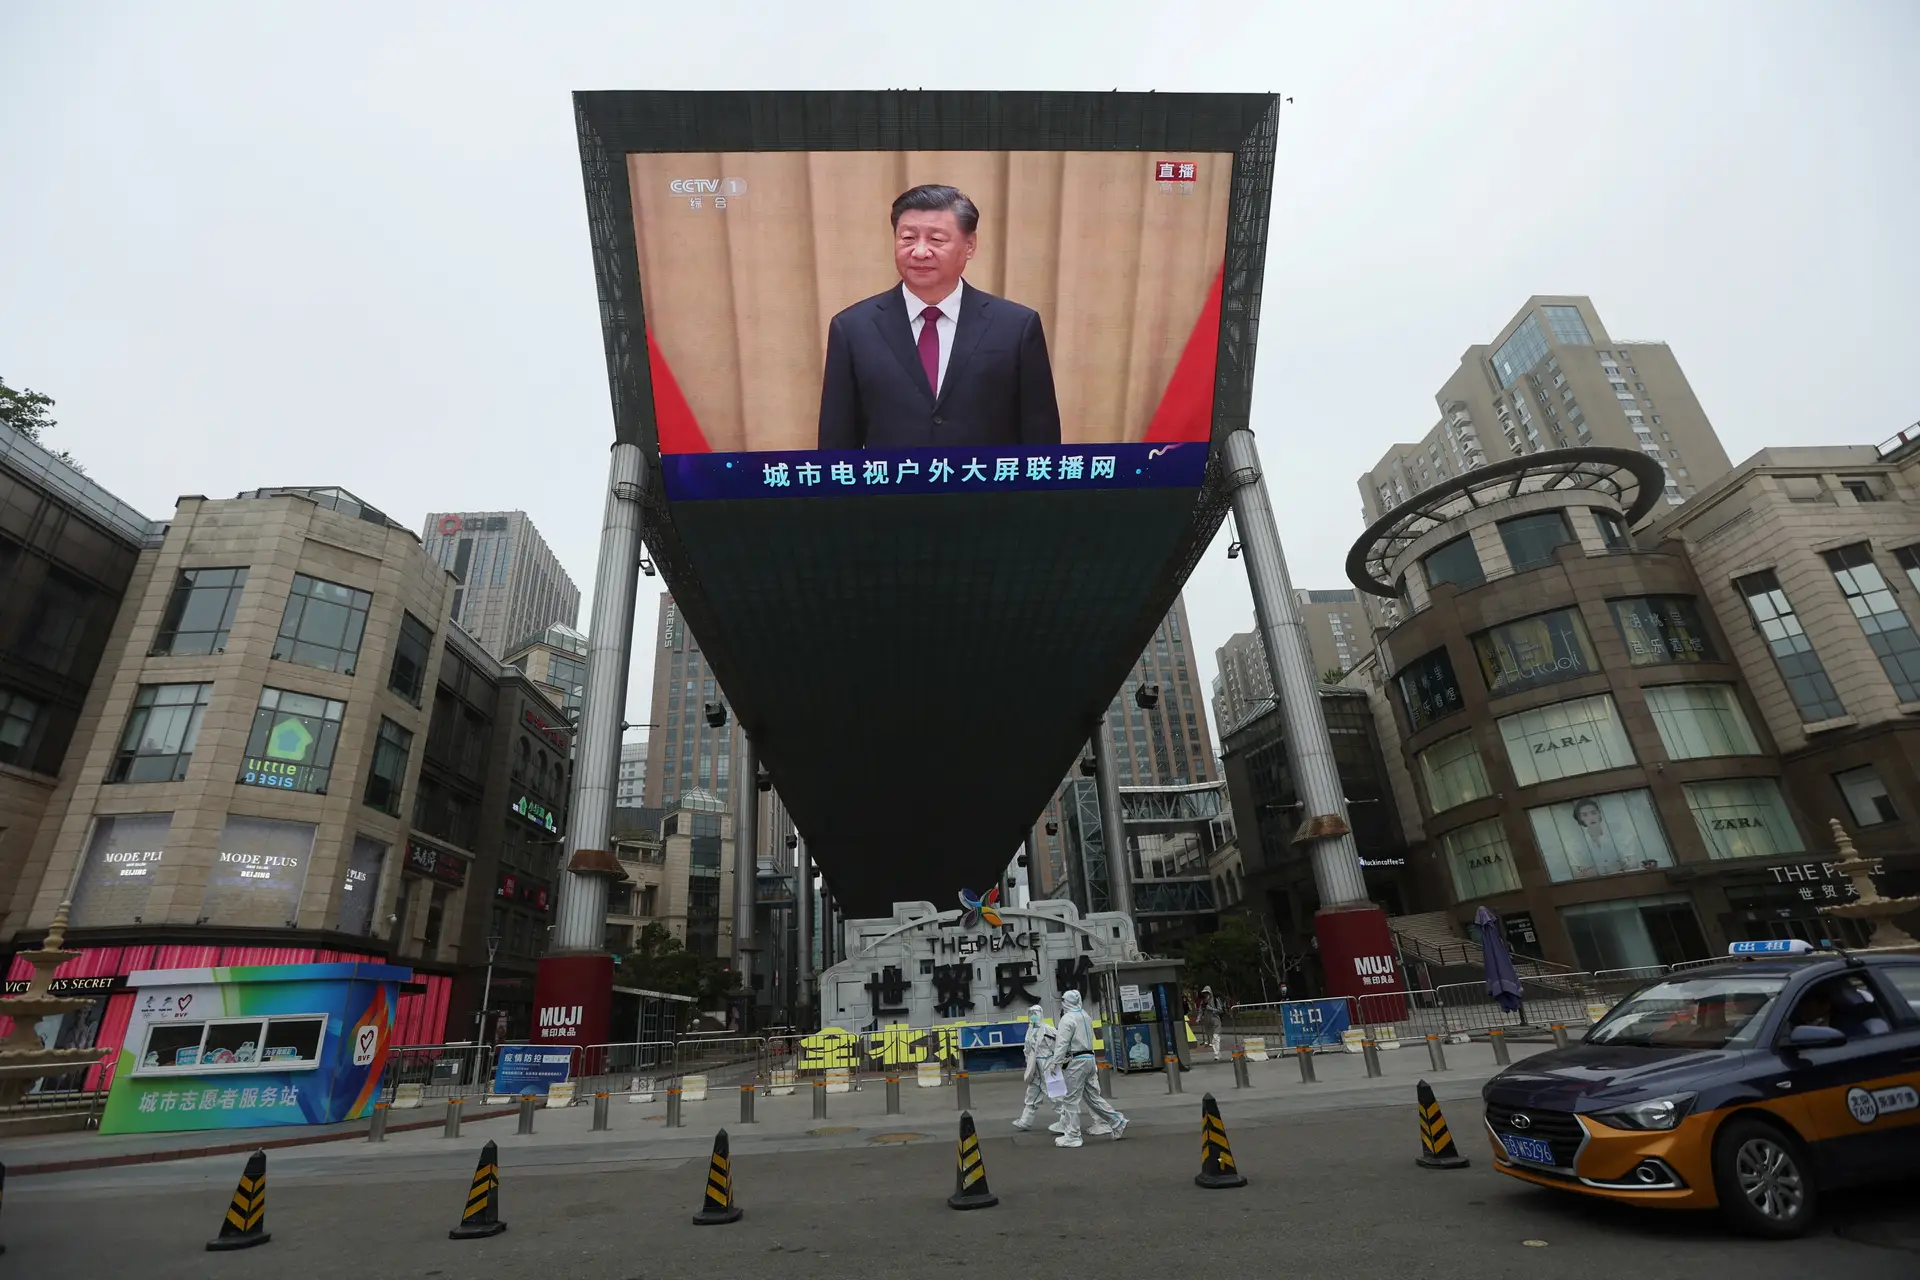 Continuação do líder chinês Xi Jinping no poder é “mau presságio” para Direitos Humanos, alerta a Human Rights Watch